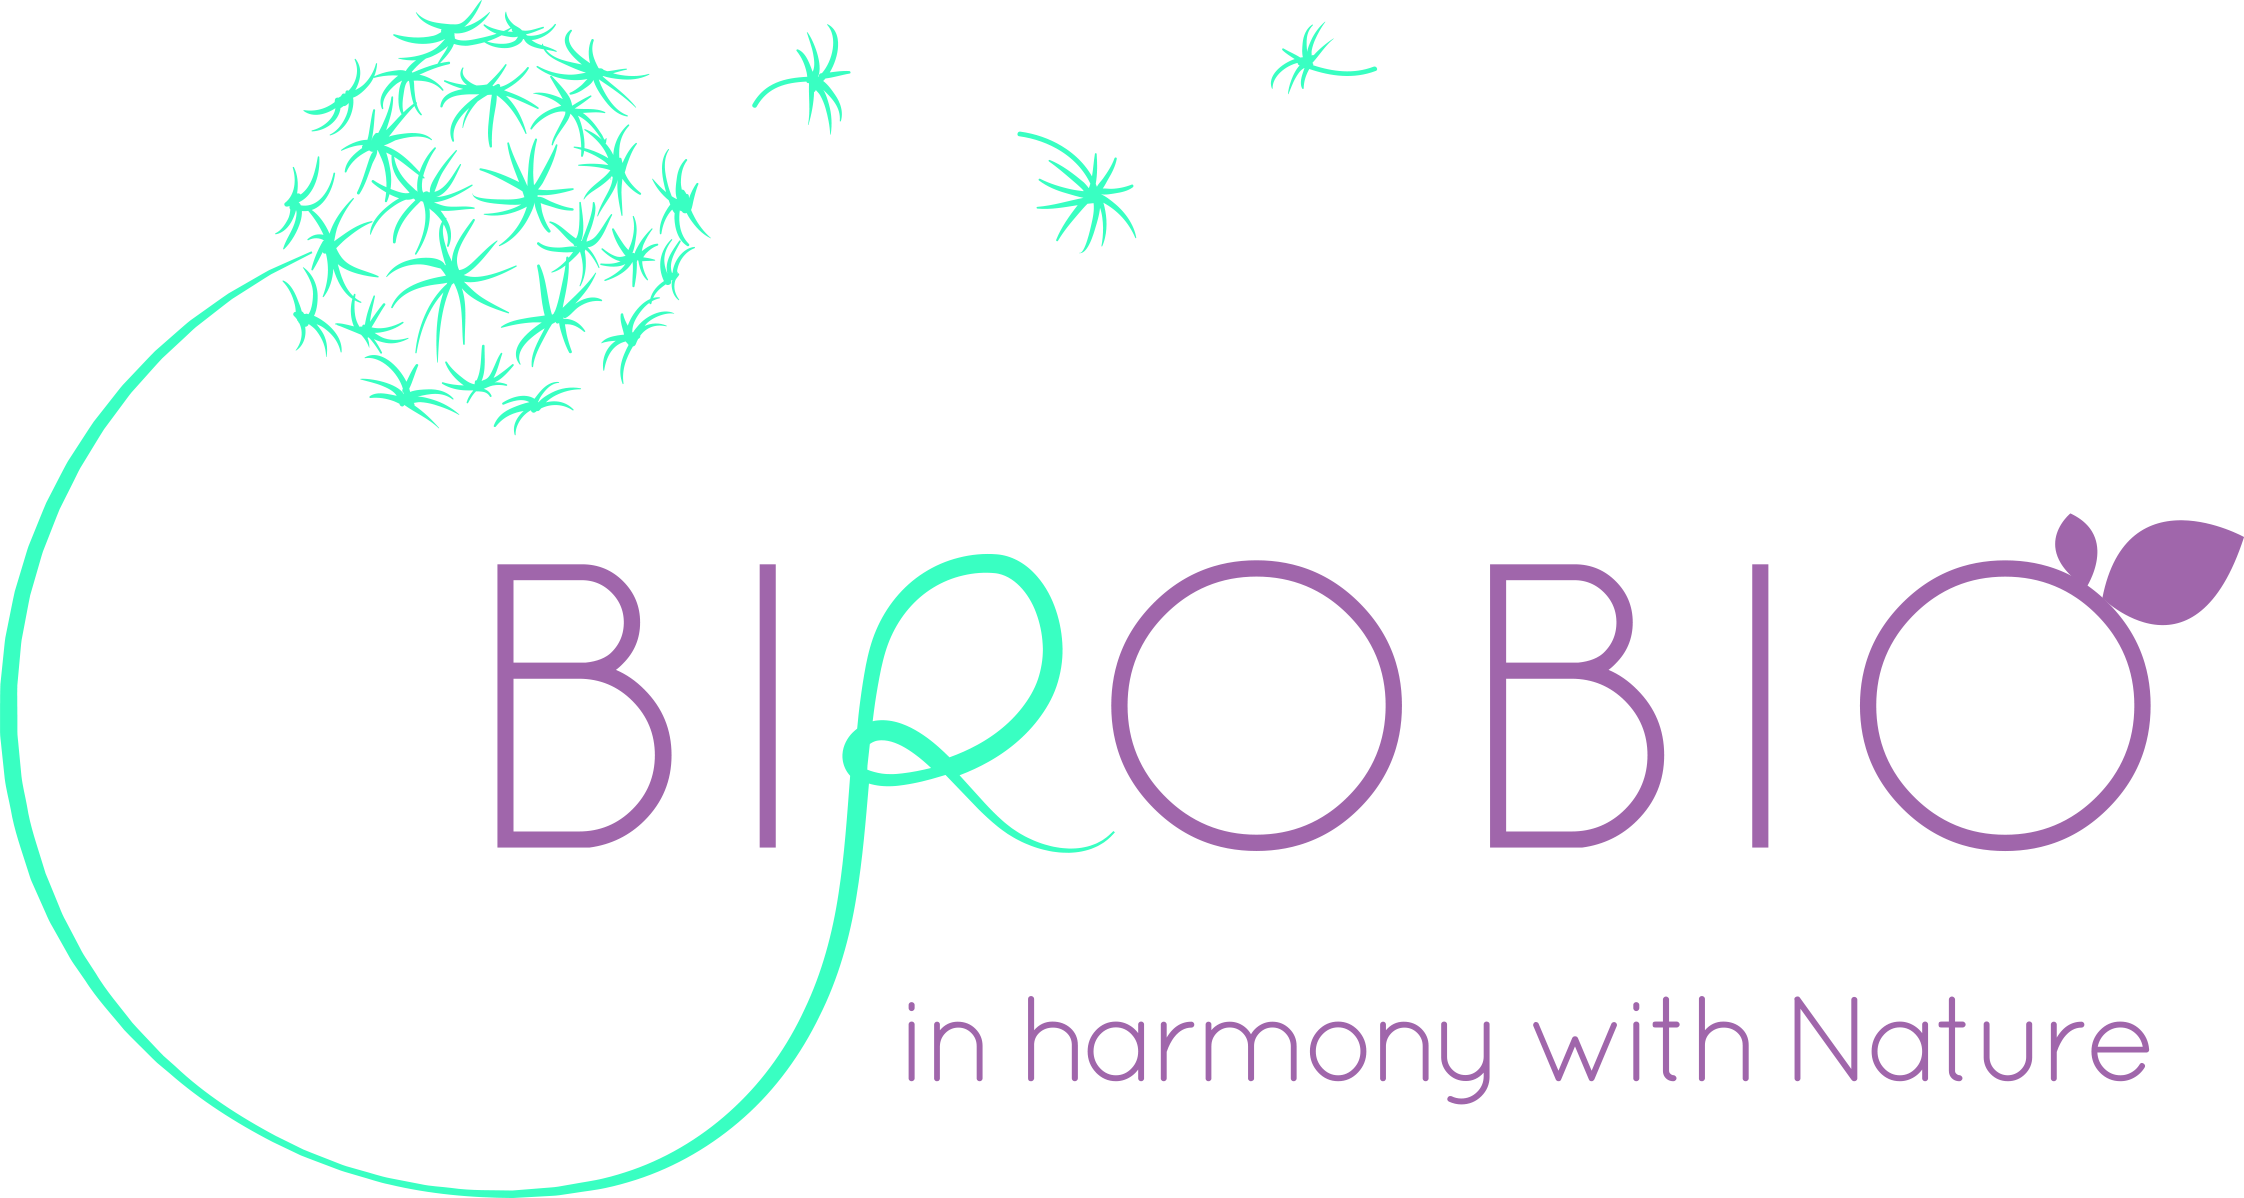 Birobio